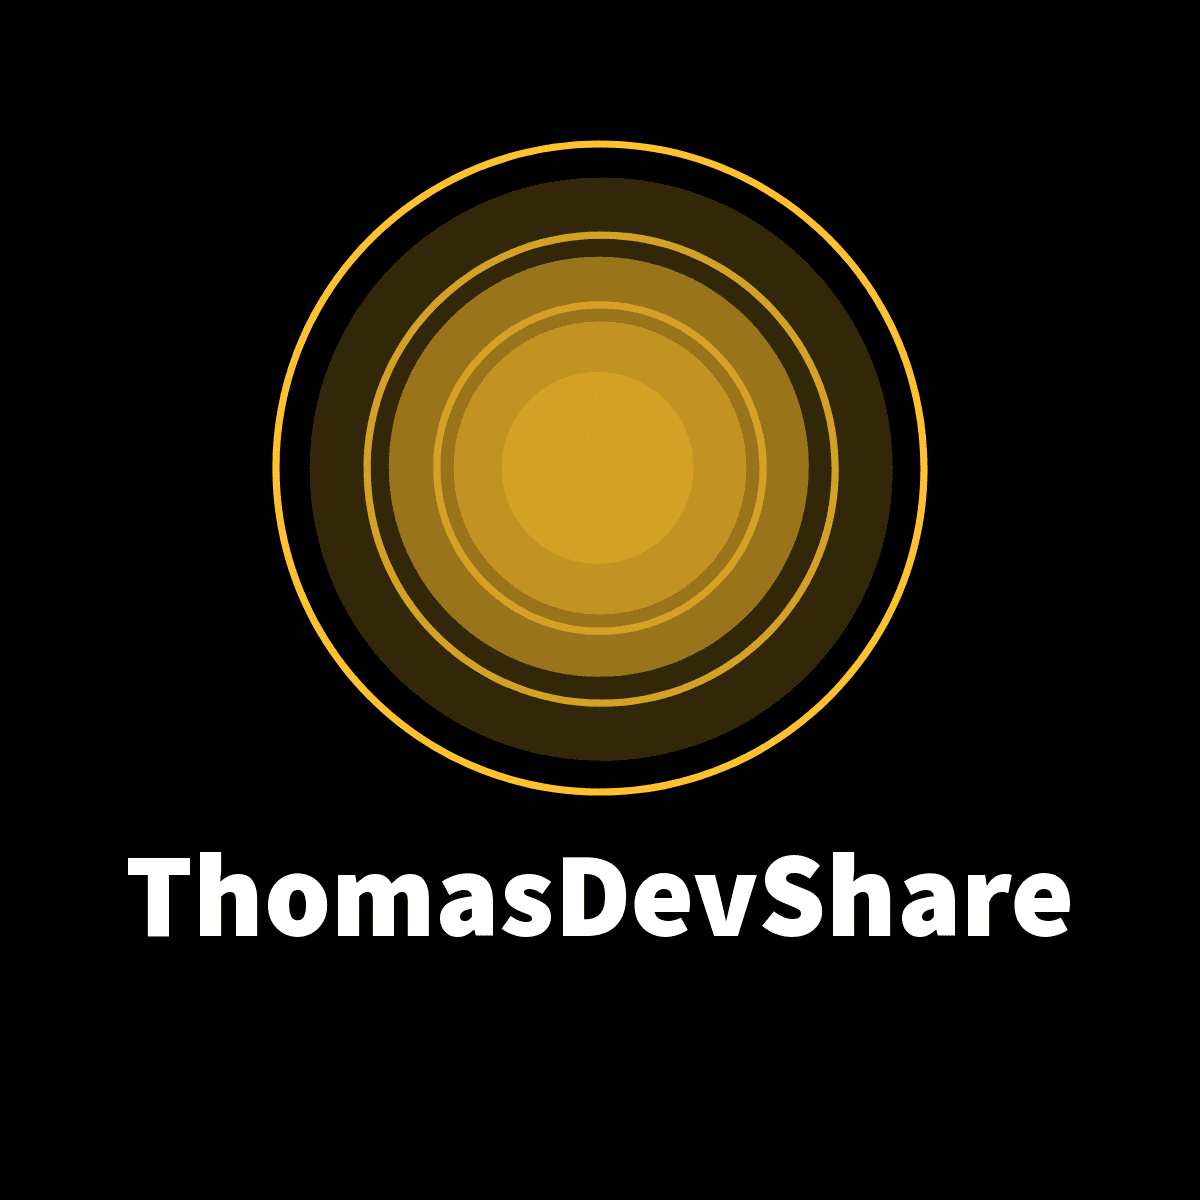 ThomasDevShare logo